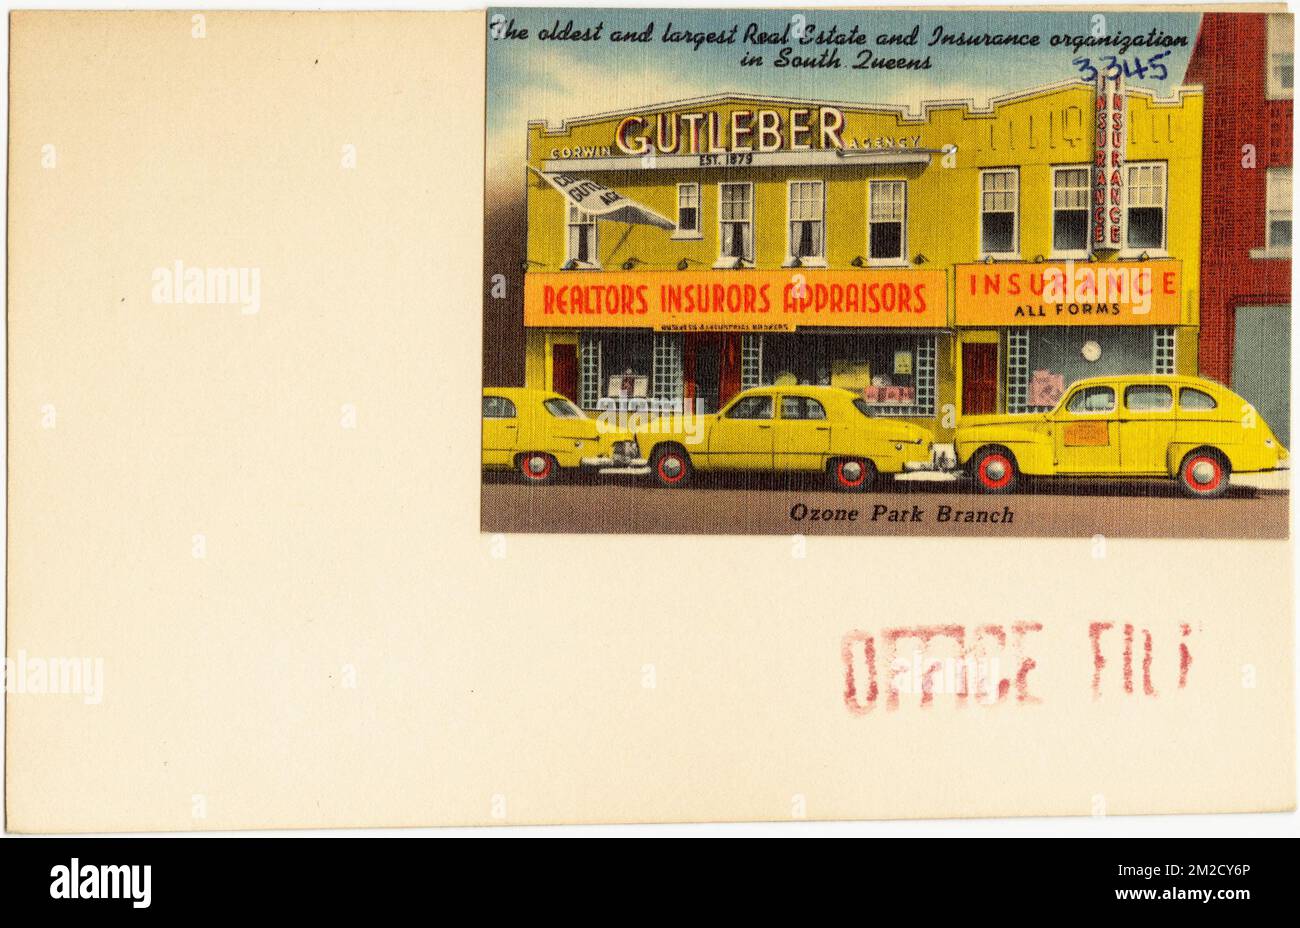 Corwin Gutleber Agentur. Die älteste und größte Immobilien- und Versicherungsorganisation in South Queens. Ozon Park Branch, Handelseinrichtungen, Tichnor Brothers Collection, Postkarten der Vereinigten Staaten Stockfoto